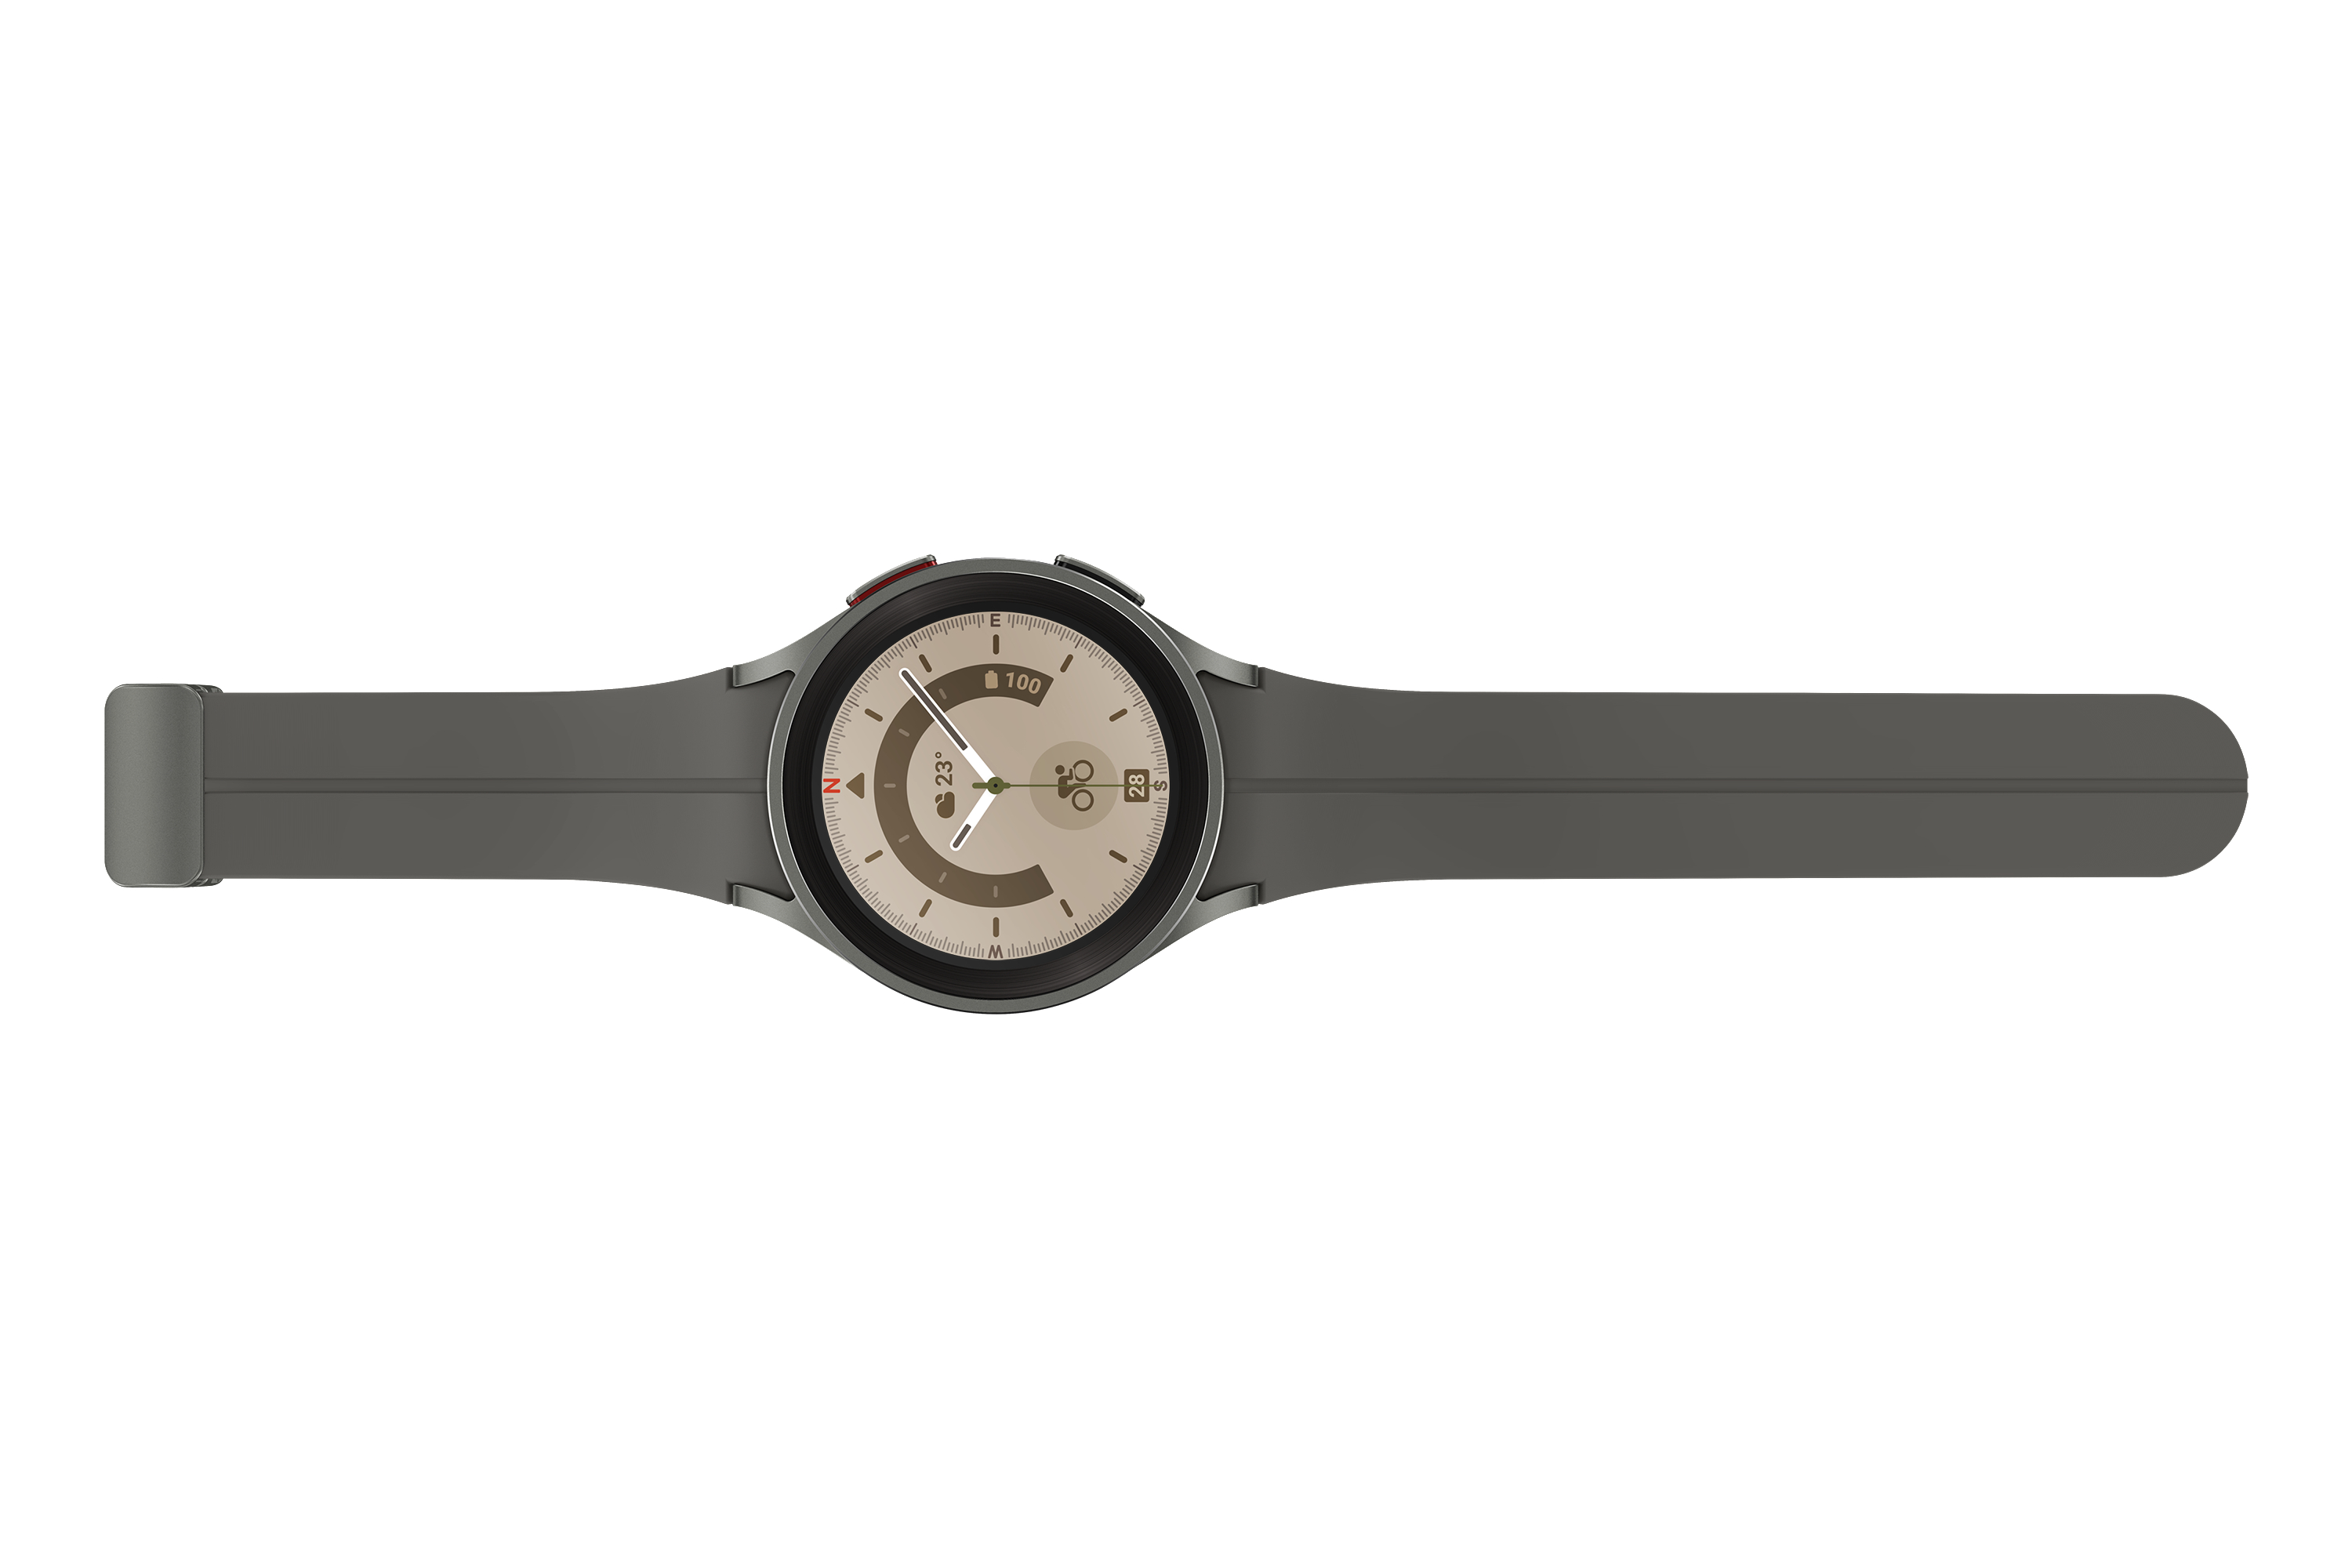 Watch5 Titan mm Galaxy Titanium Smartwatch Pro 45 Gray LTE Fluorkautschuk, M/L, SAMSUNG